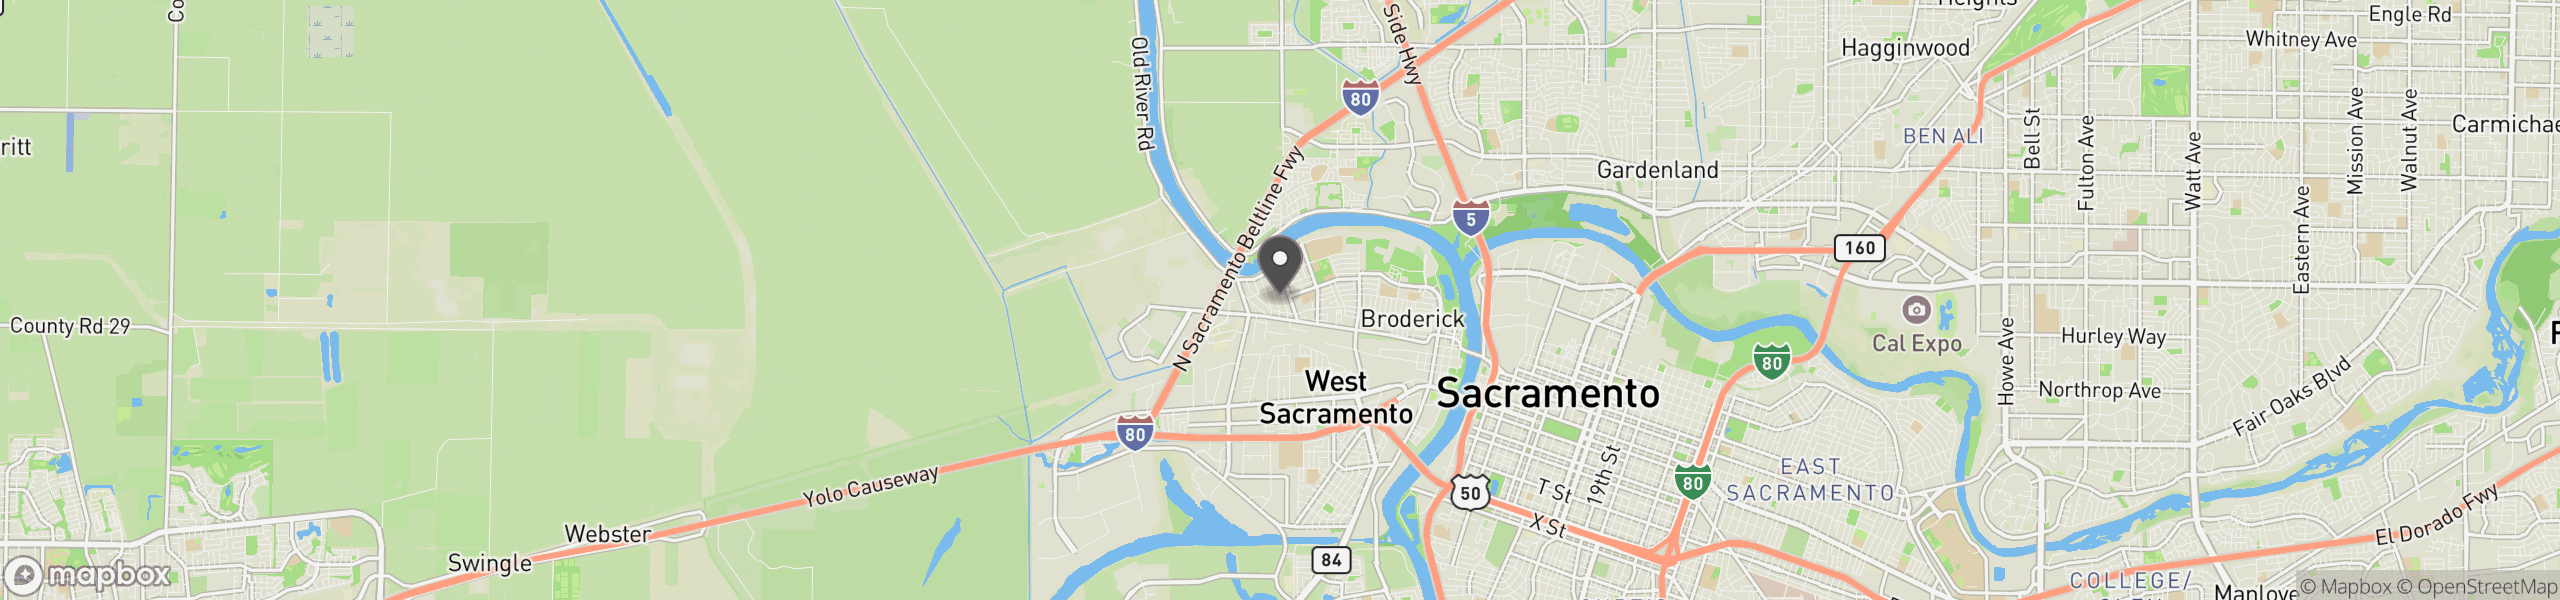 West Sacramento, CA 95605